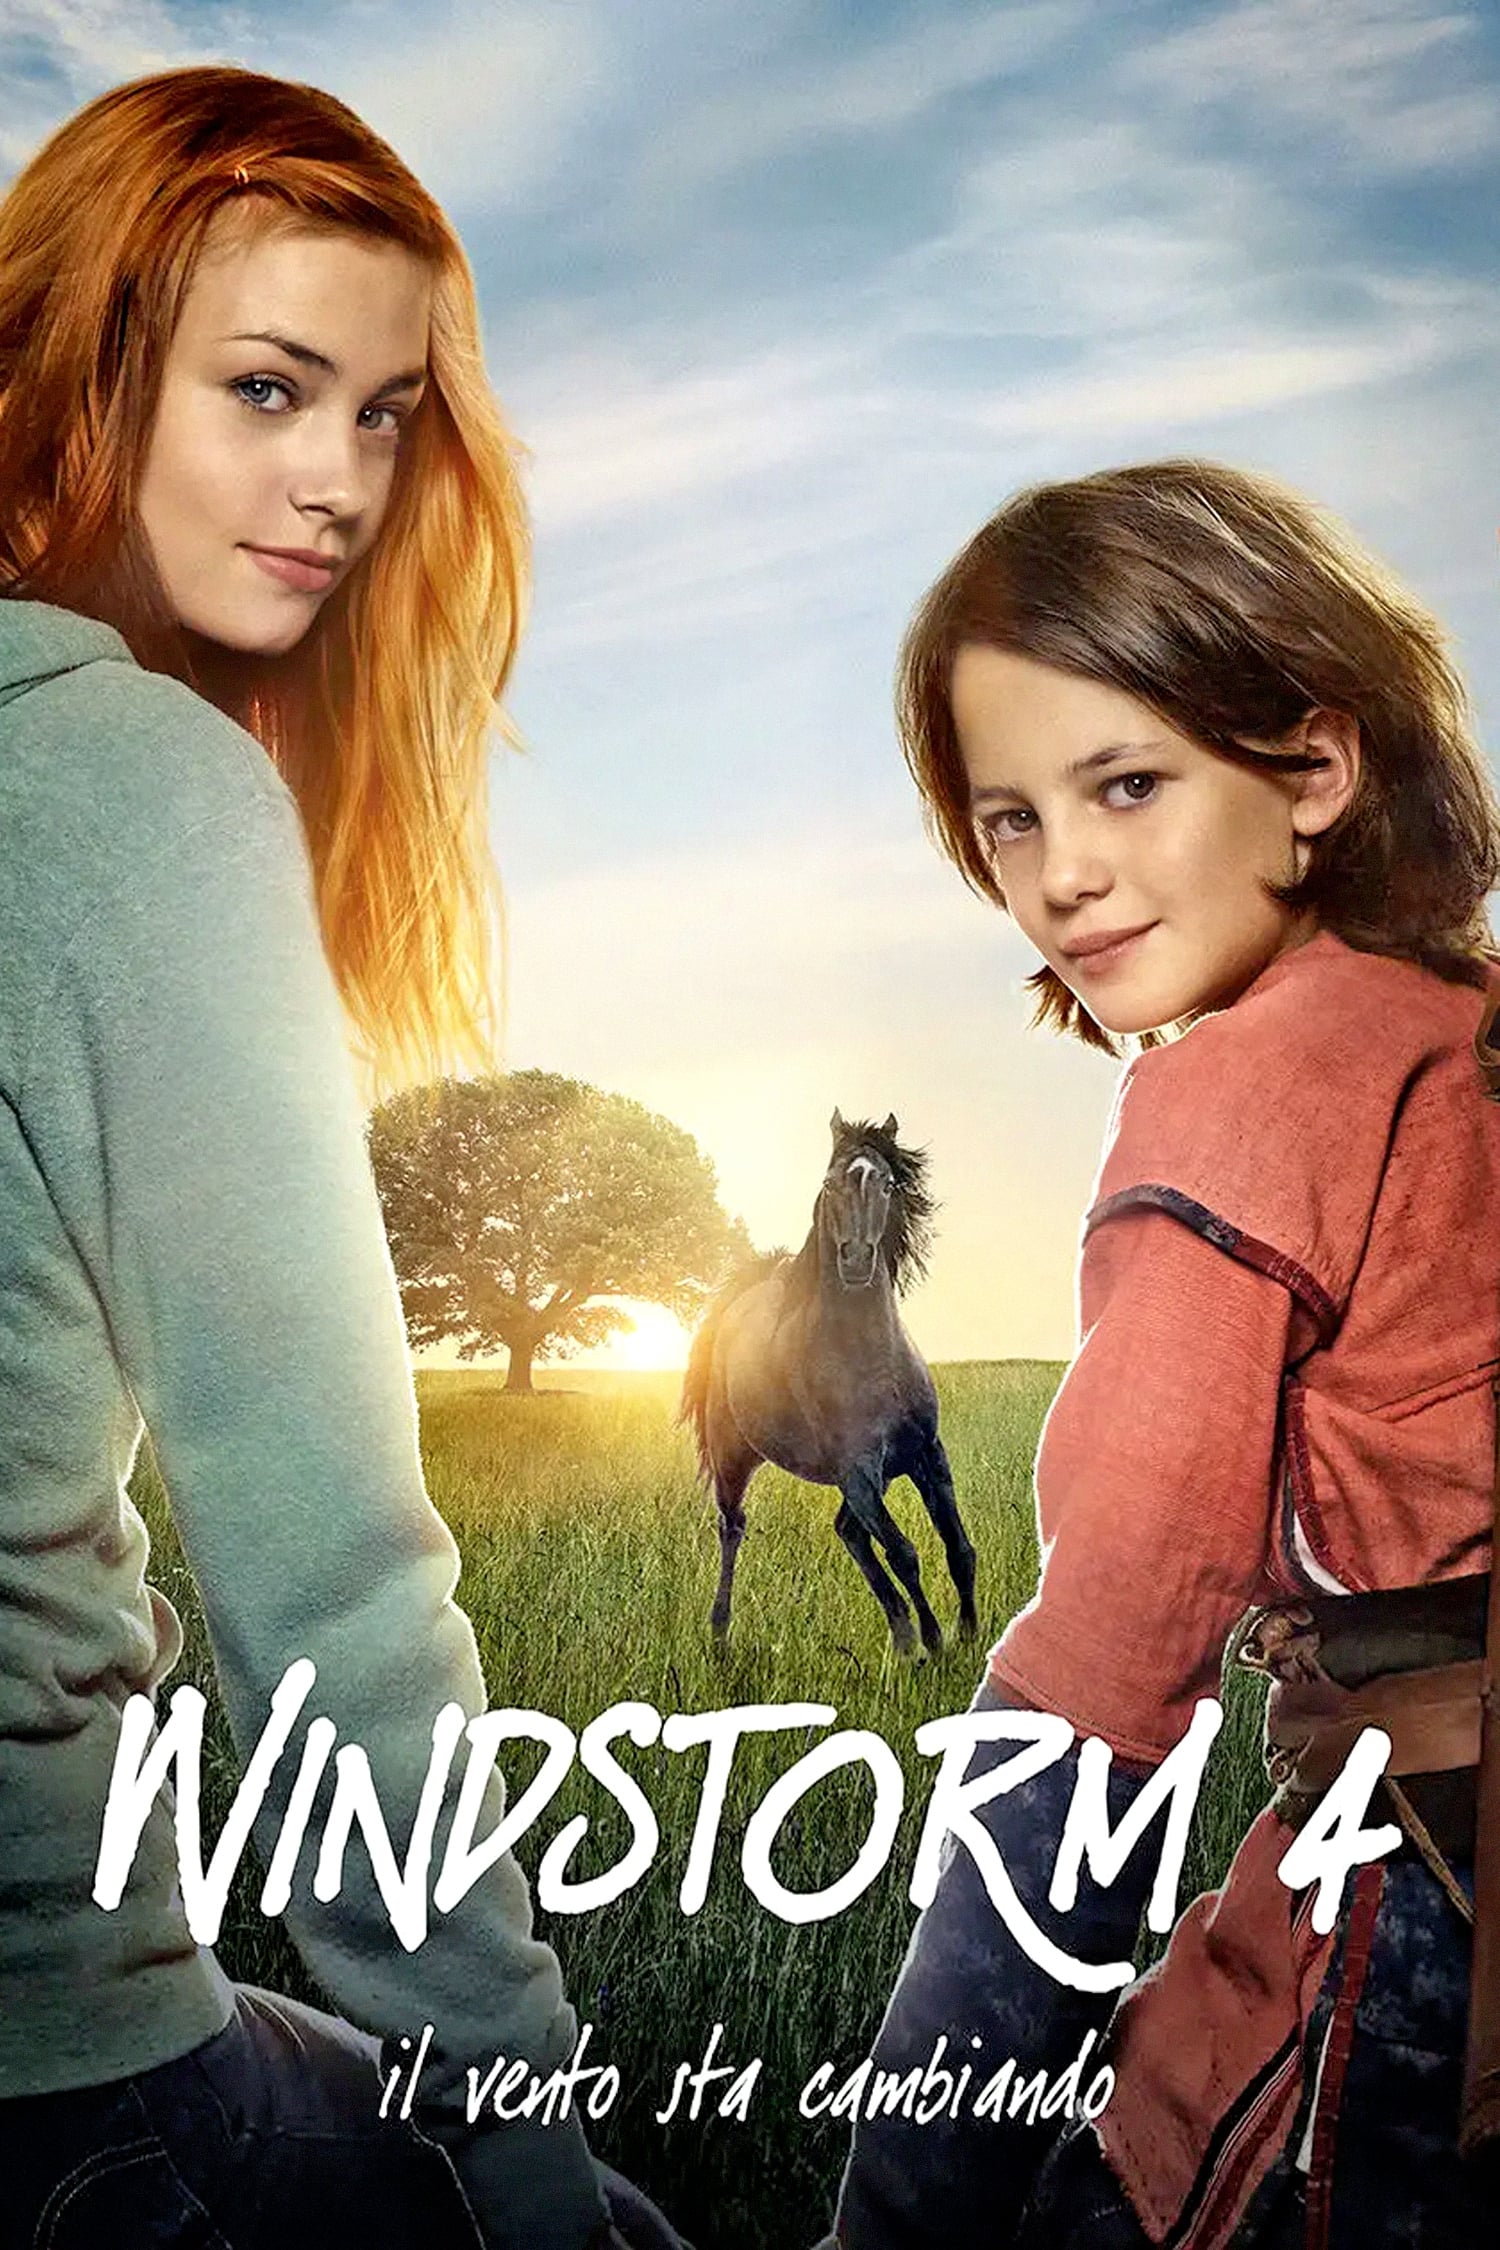 Windstorm – Il vento sta cambiando [HD] (2019)